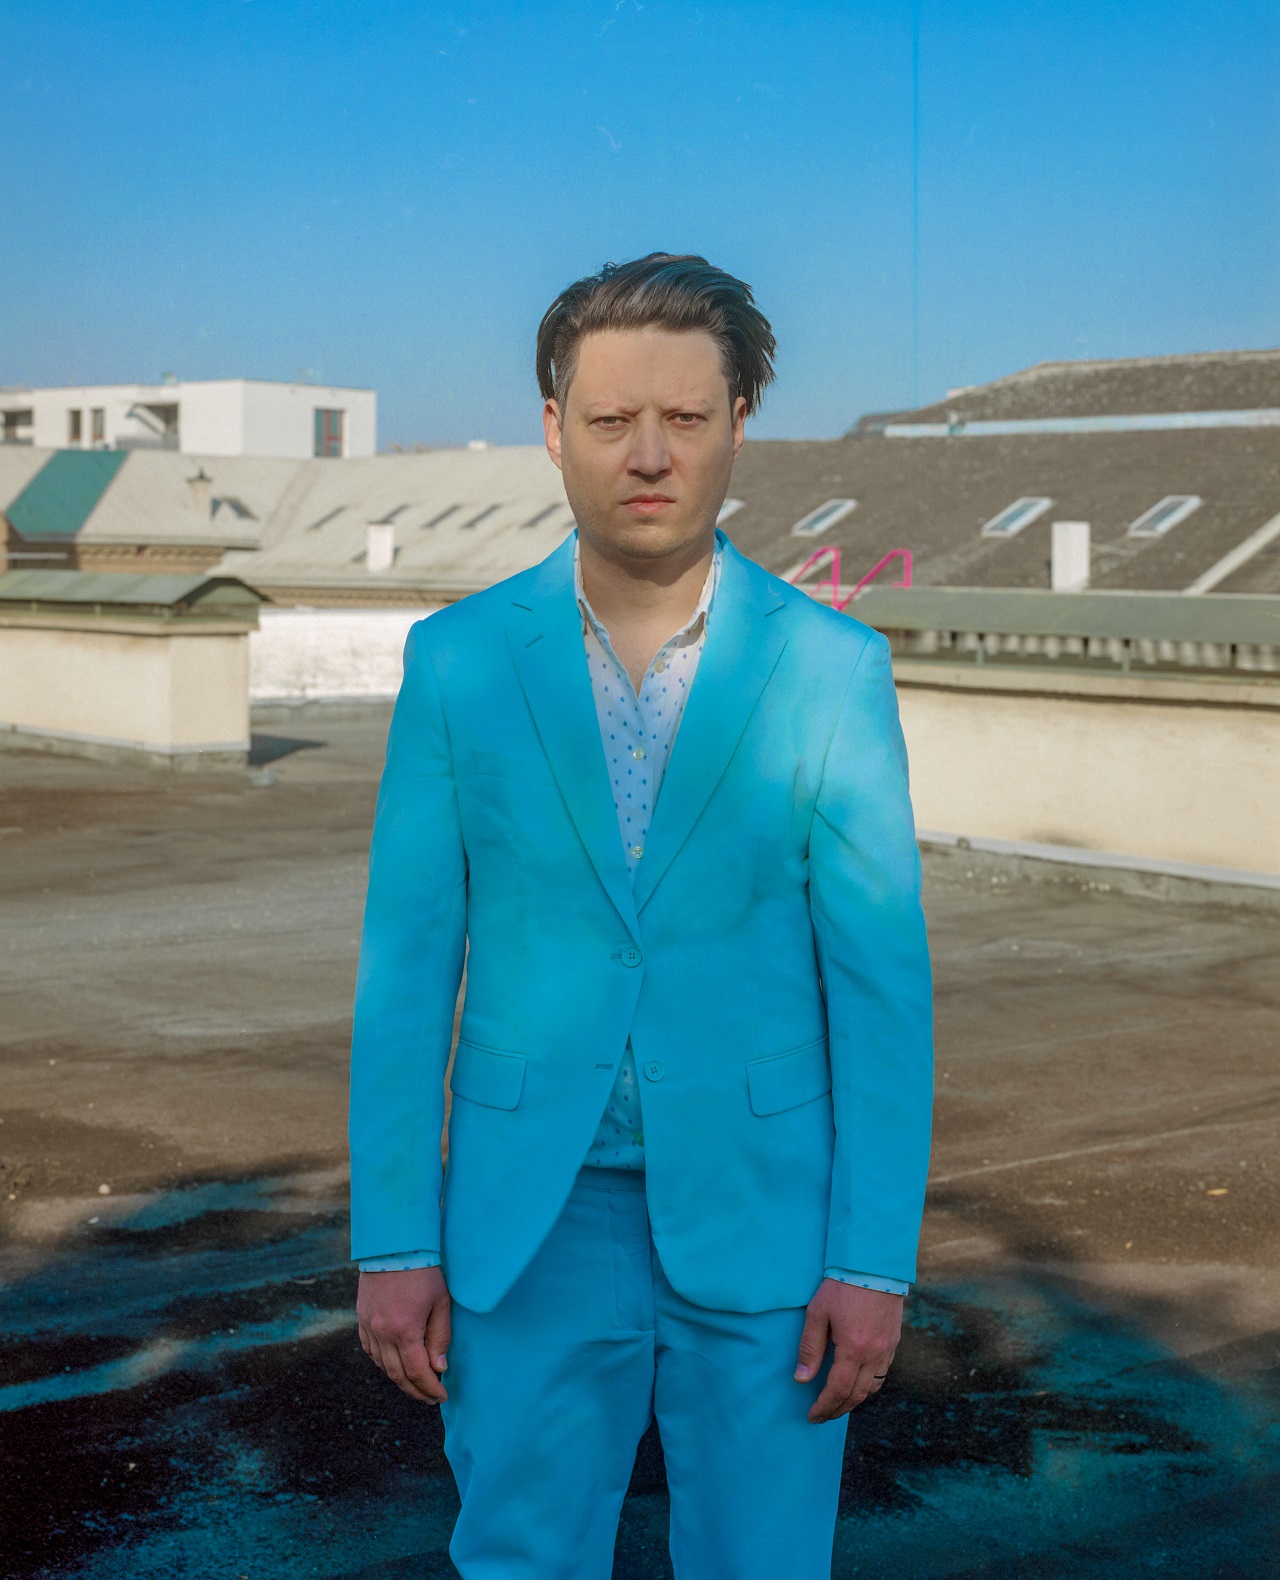 Portraitfoto von Konstantin Gropper von Get Well Soon im himmelblauen Anzug